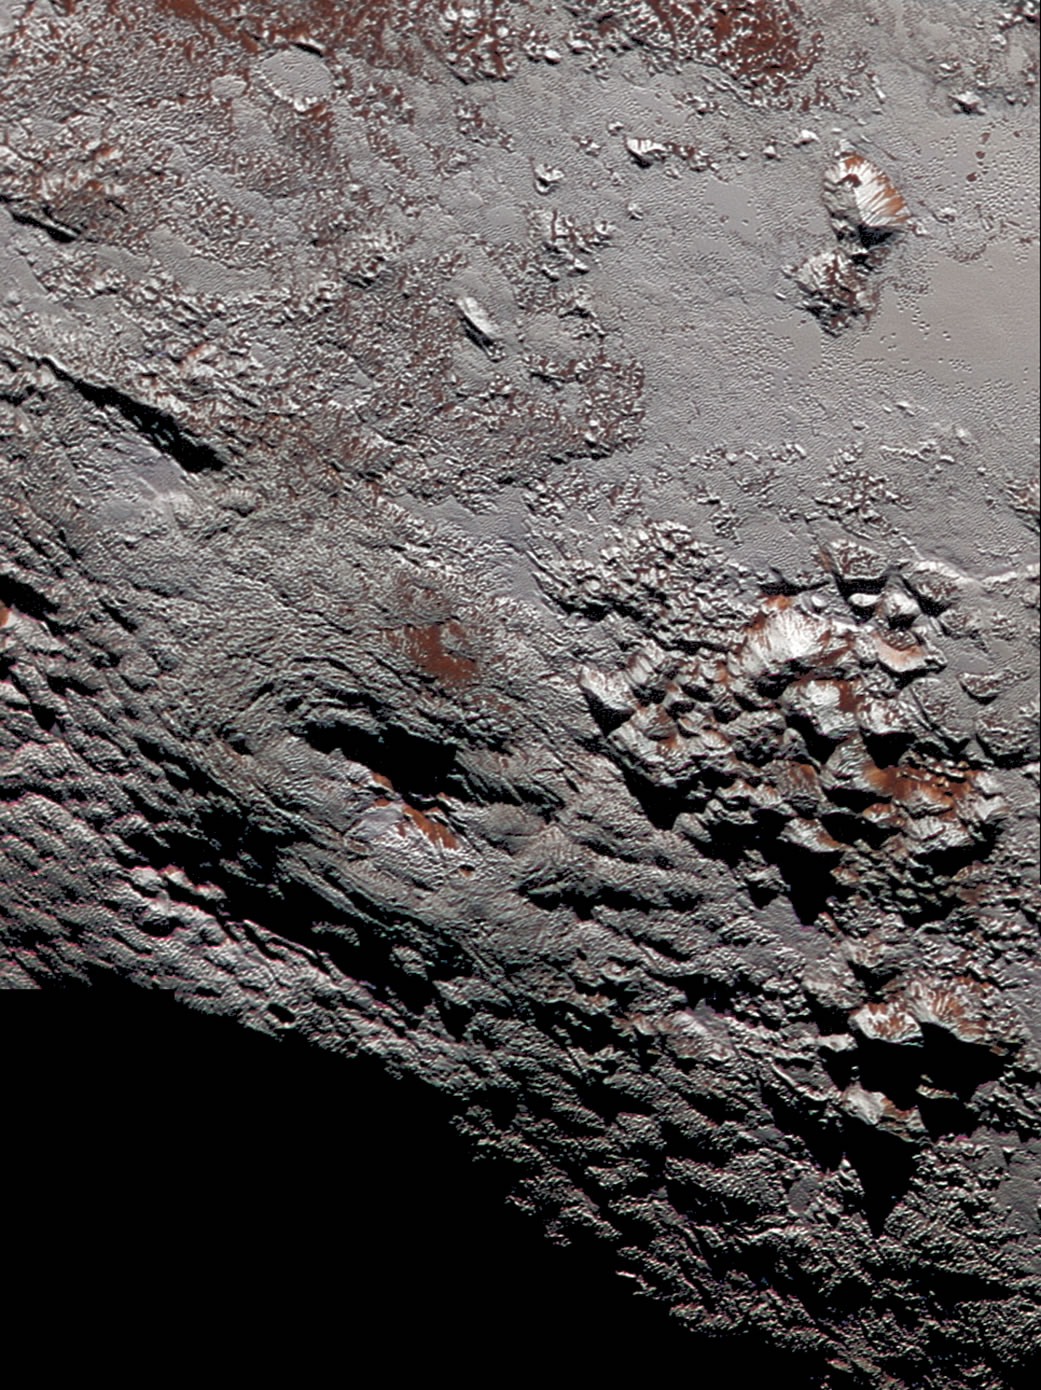 矮行星冥王星在较近期出现过冰火山活动 有些火山最高达7千米